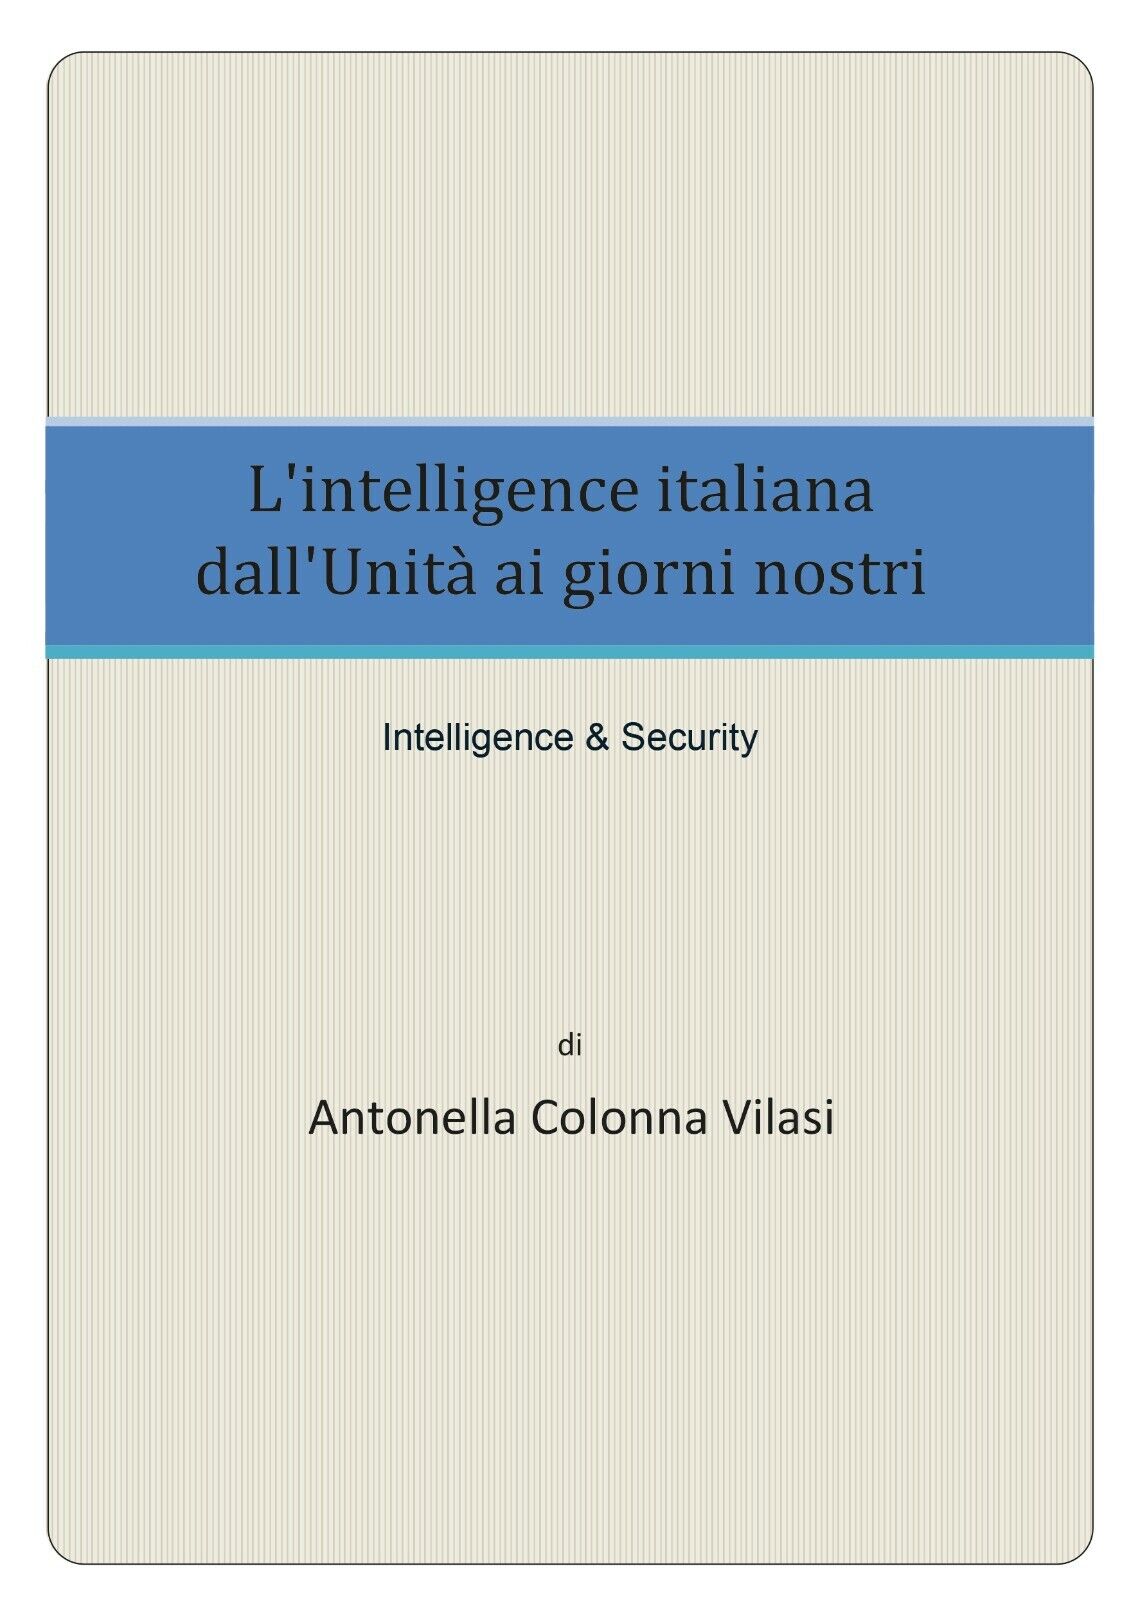 L'intelligence italiana dalL'Unit? ai giorni nostri - Antonella Colonna Vilasi,  libro usato